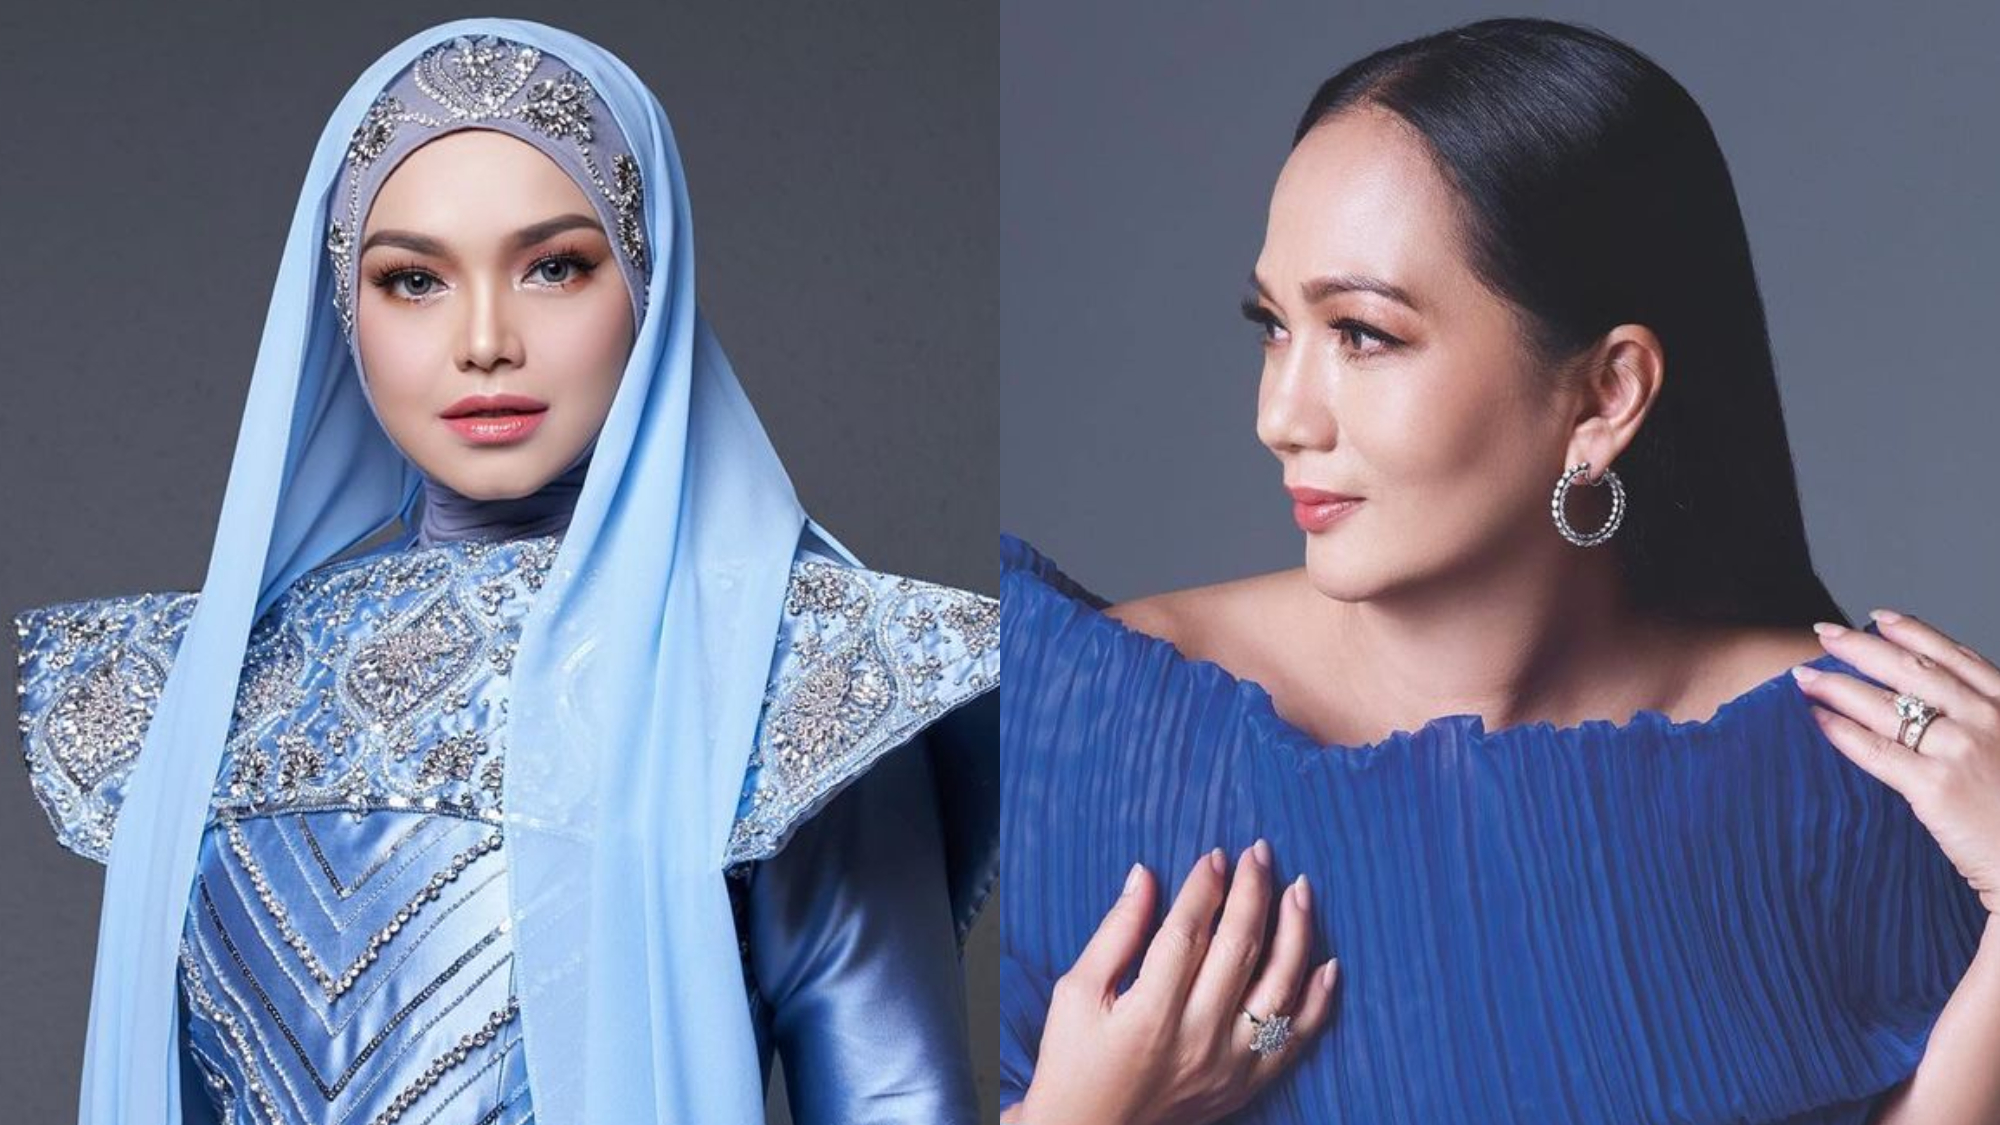 Gelaran Biduanita Negara, siapa lebih layak Siti Nurhaliza atau Sheila Majid?